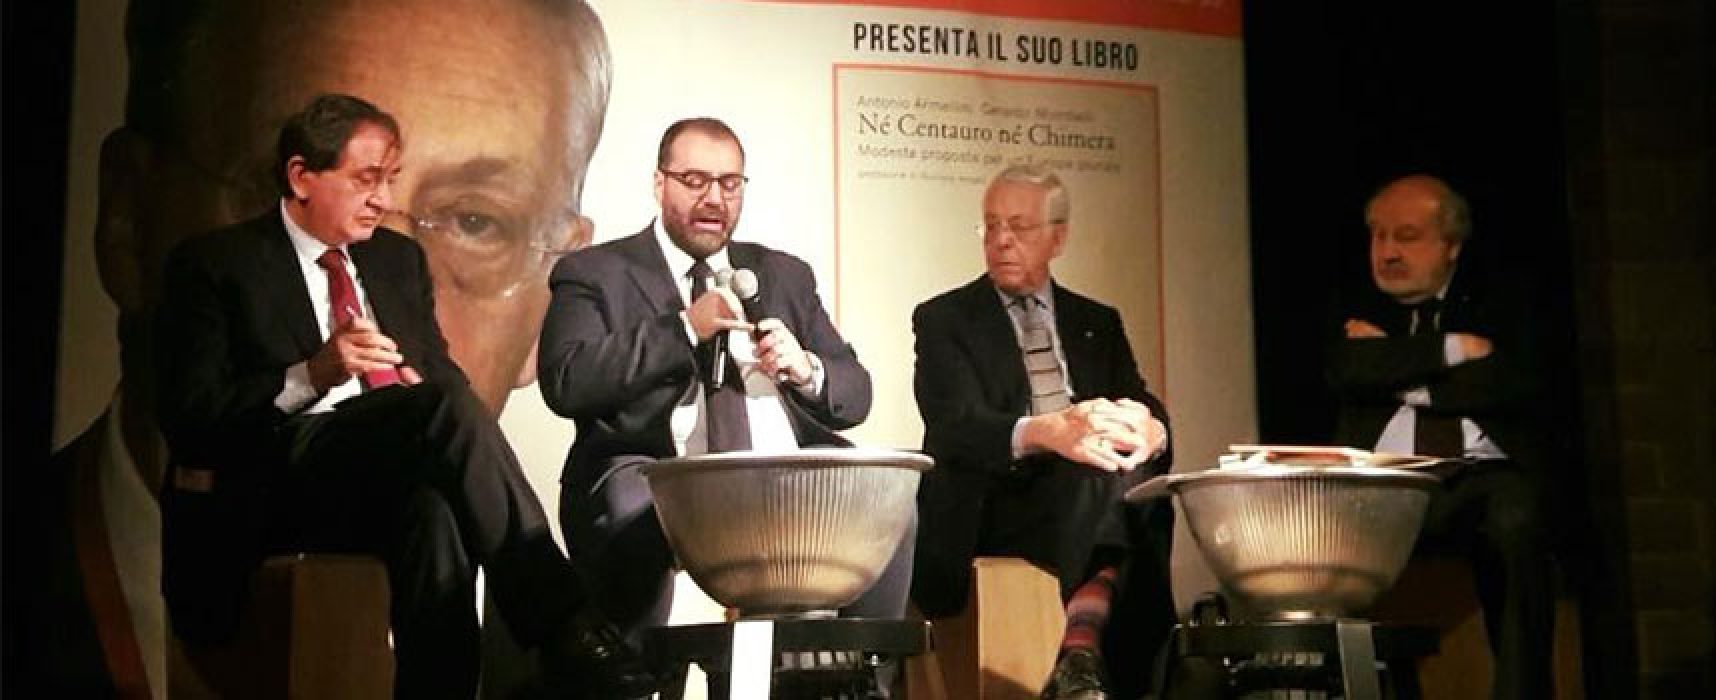 “Nè centauro nè chimera”: l’ambasciatore Antonio Armellini espone il suo progetto per un’Europa plurale